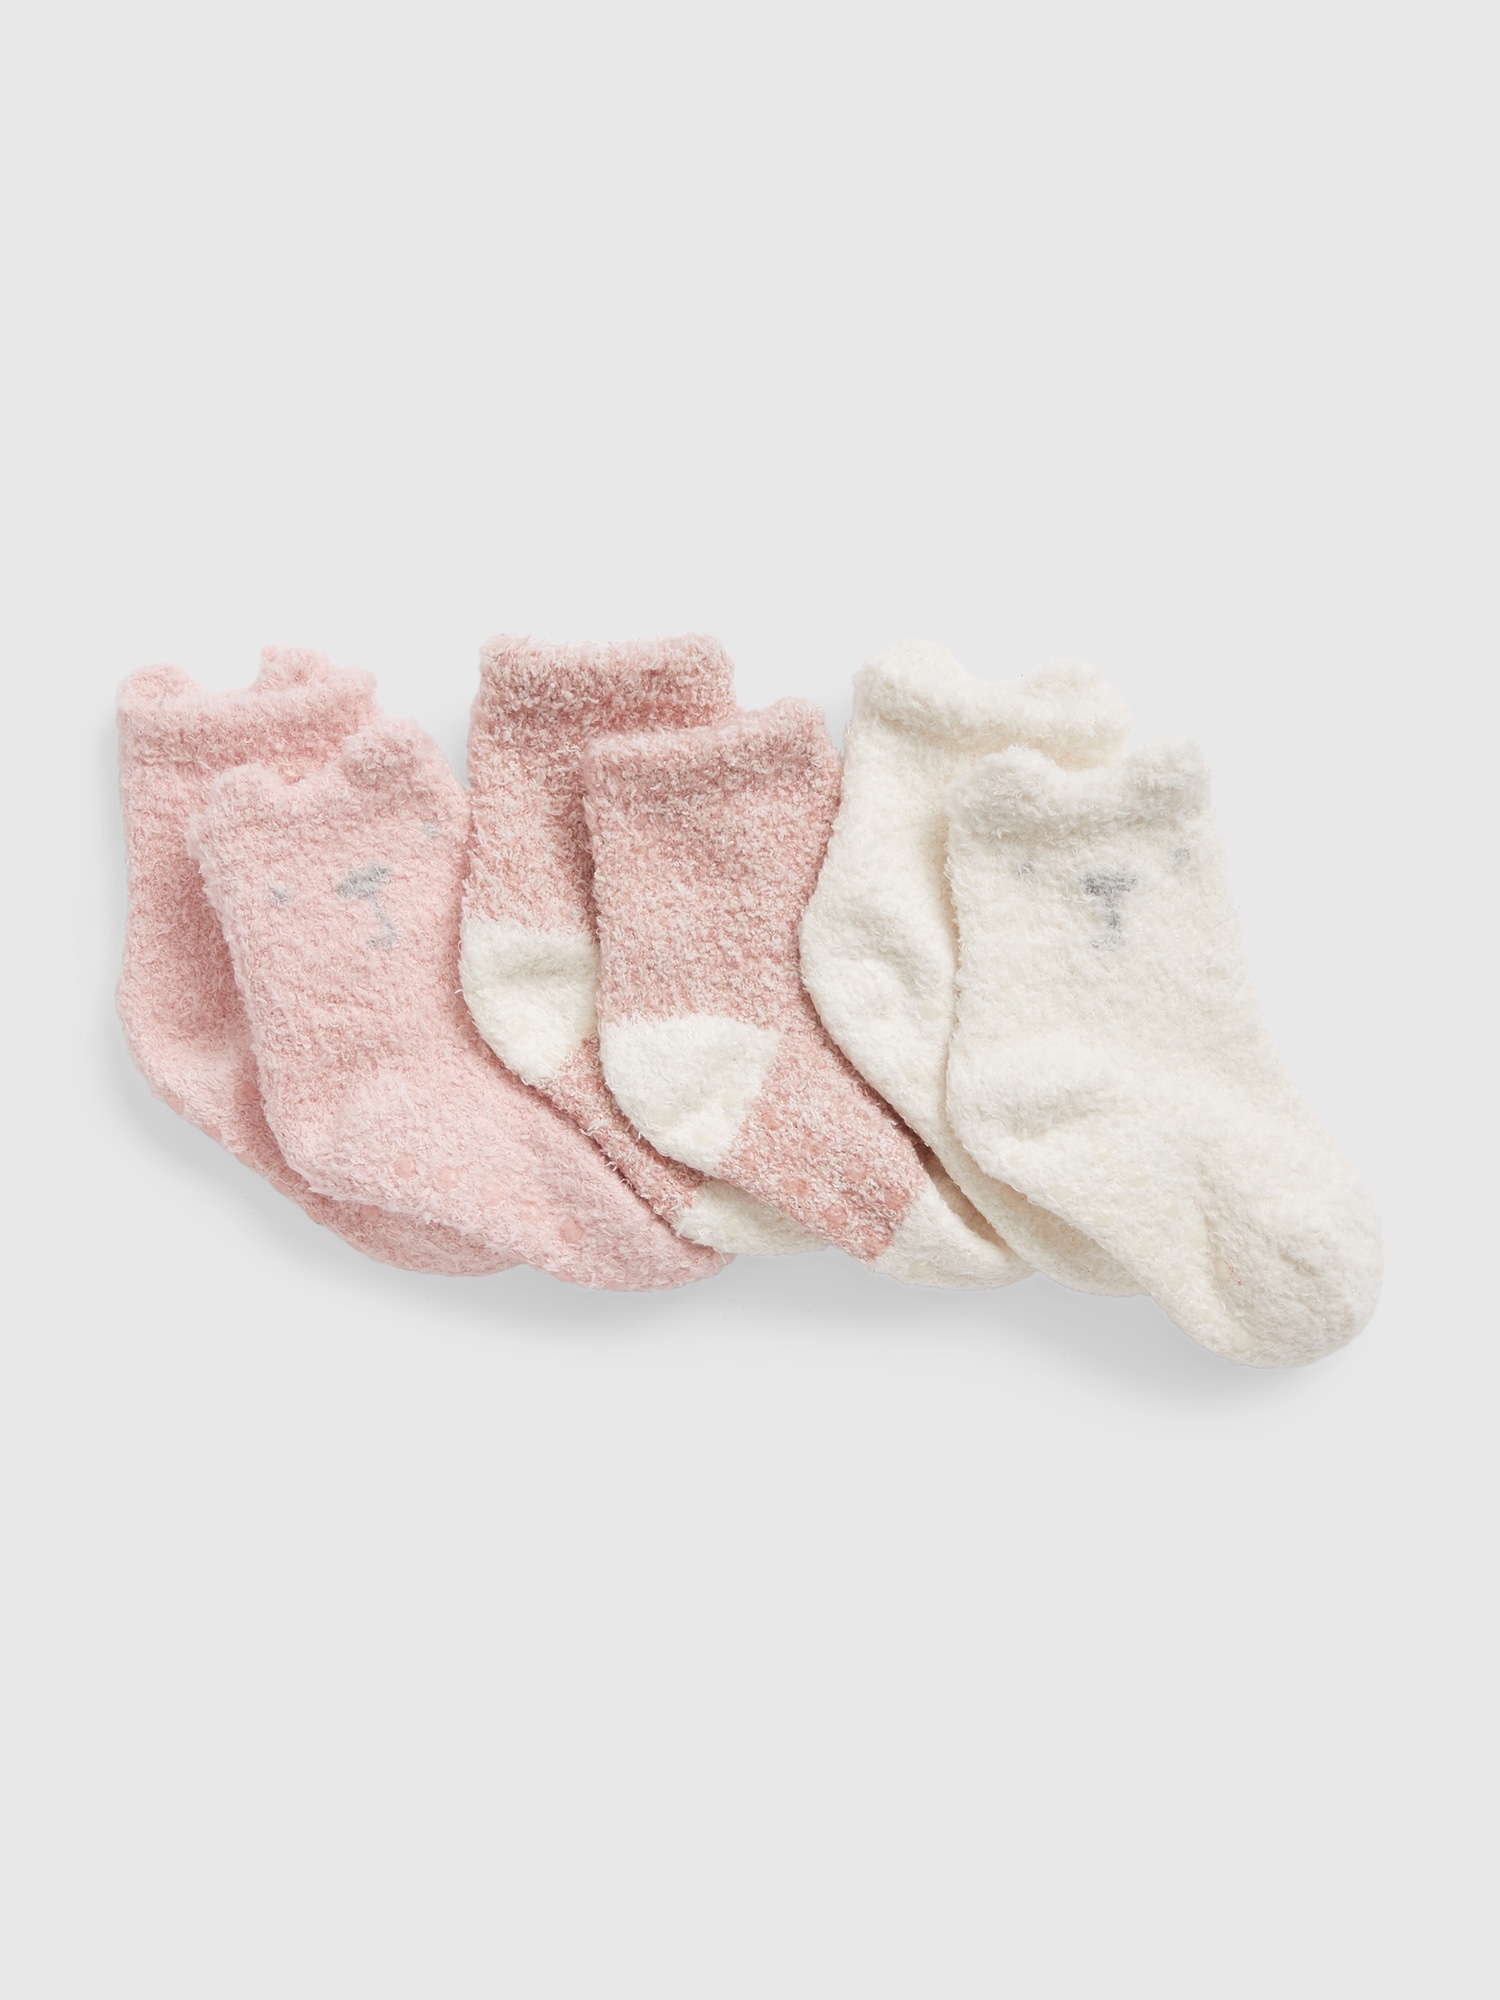 3 Socks Set S00 - For Baby